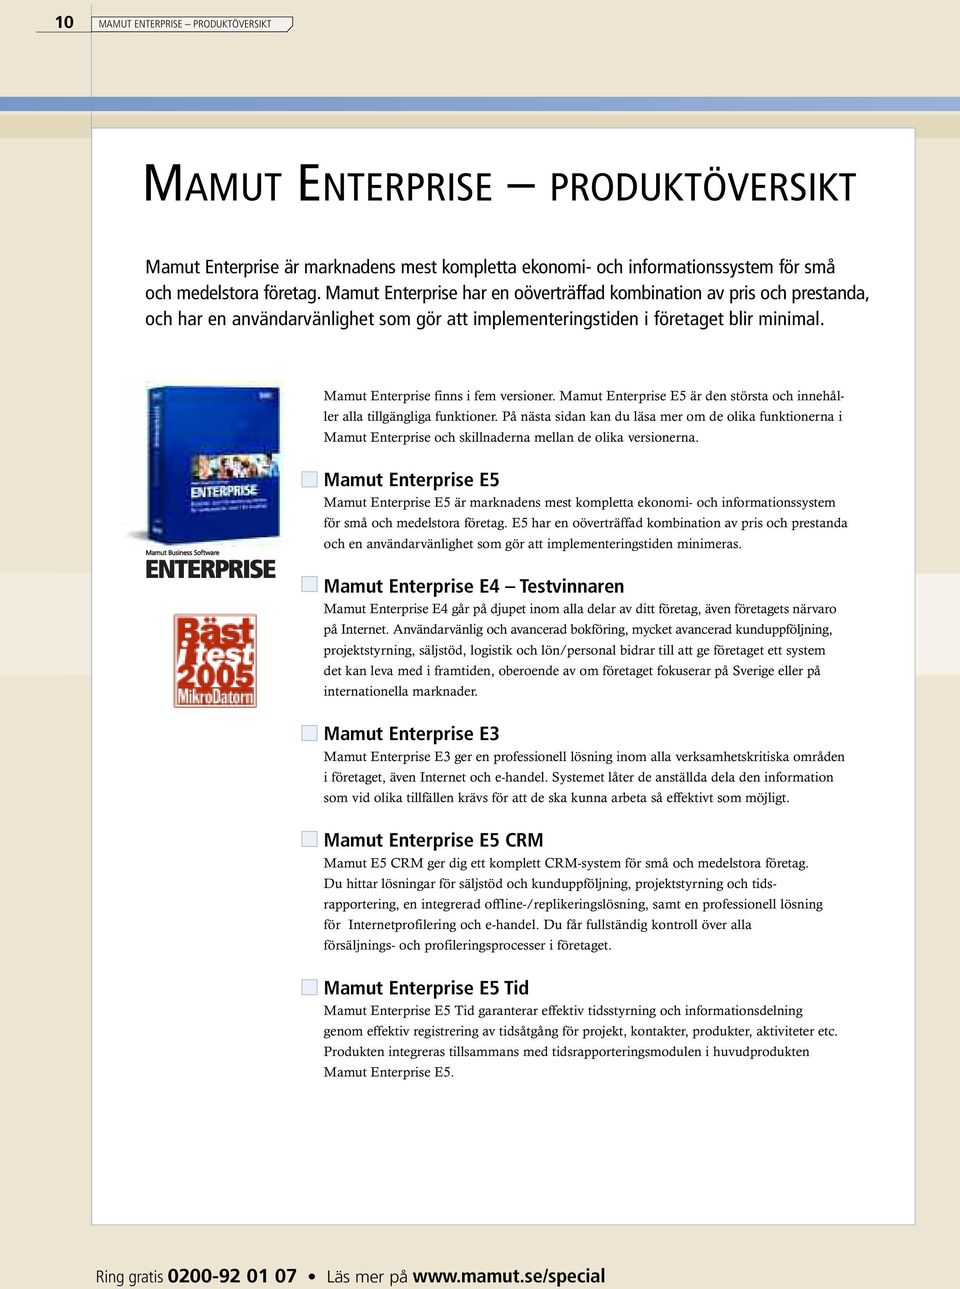 Mamut Enterprise E5 är den största och innehåller alla tillgängliga funktioner. På nästa sidan kan du läsa mer om de olika funktionerna i Mamut Enterprise och skillnaderna mellan de olika versionerna.